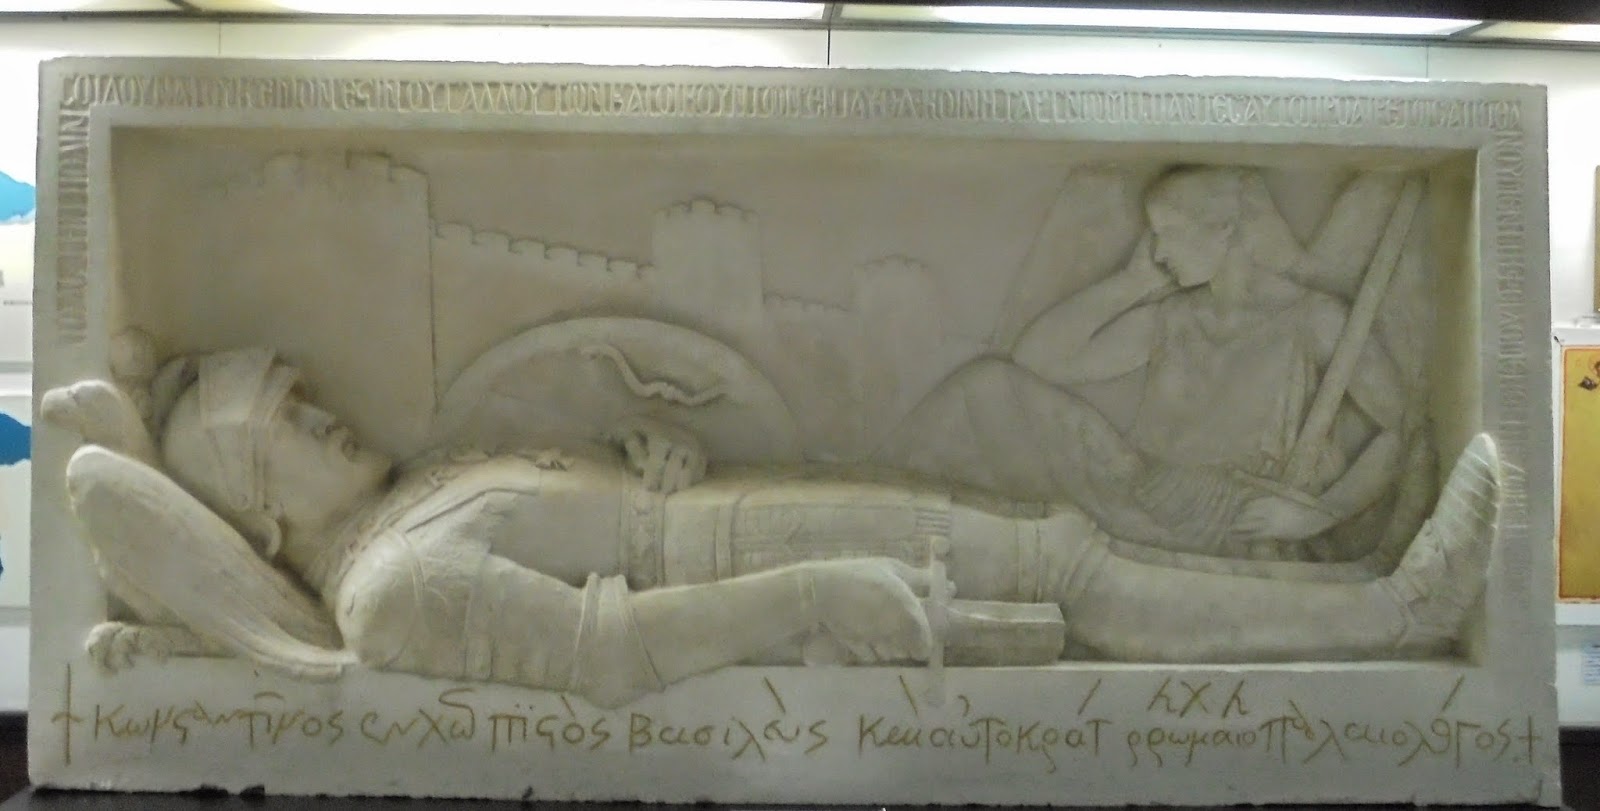  το έργο Κωνσταντίνος Παλαιολόγος του Φαληρέα Κωνσταντίνου στο Πολεμικό Μουσείο των Αθηνών